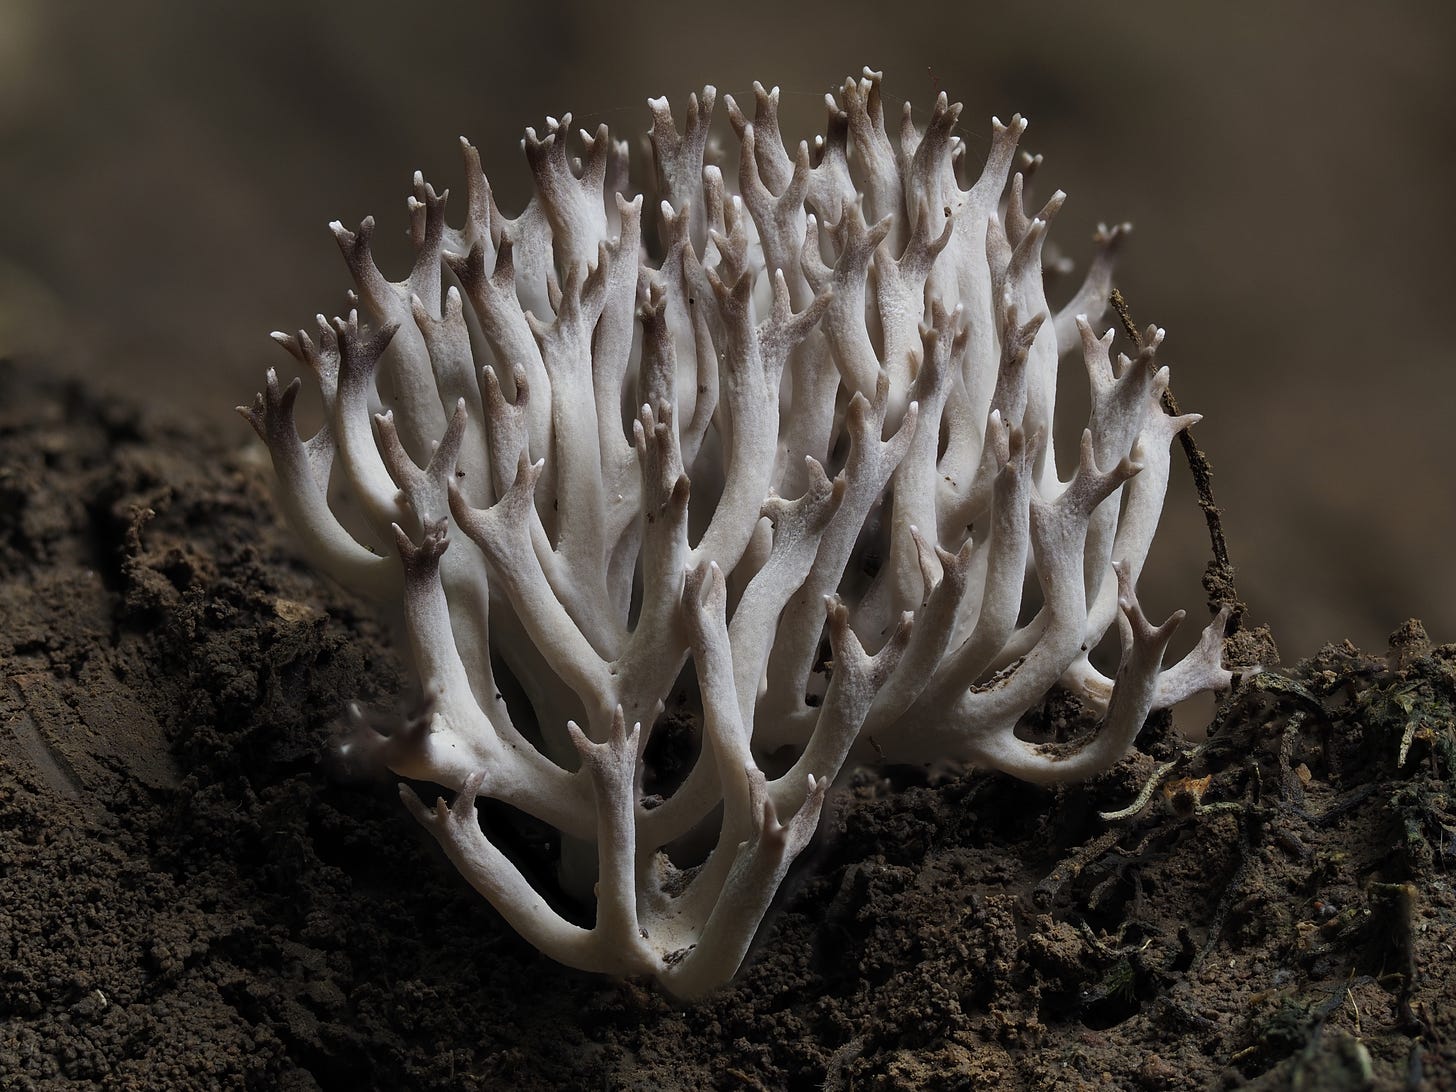 Ramaria coral fungus